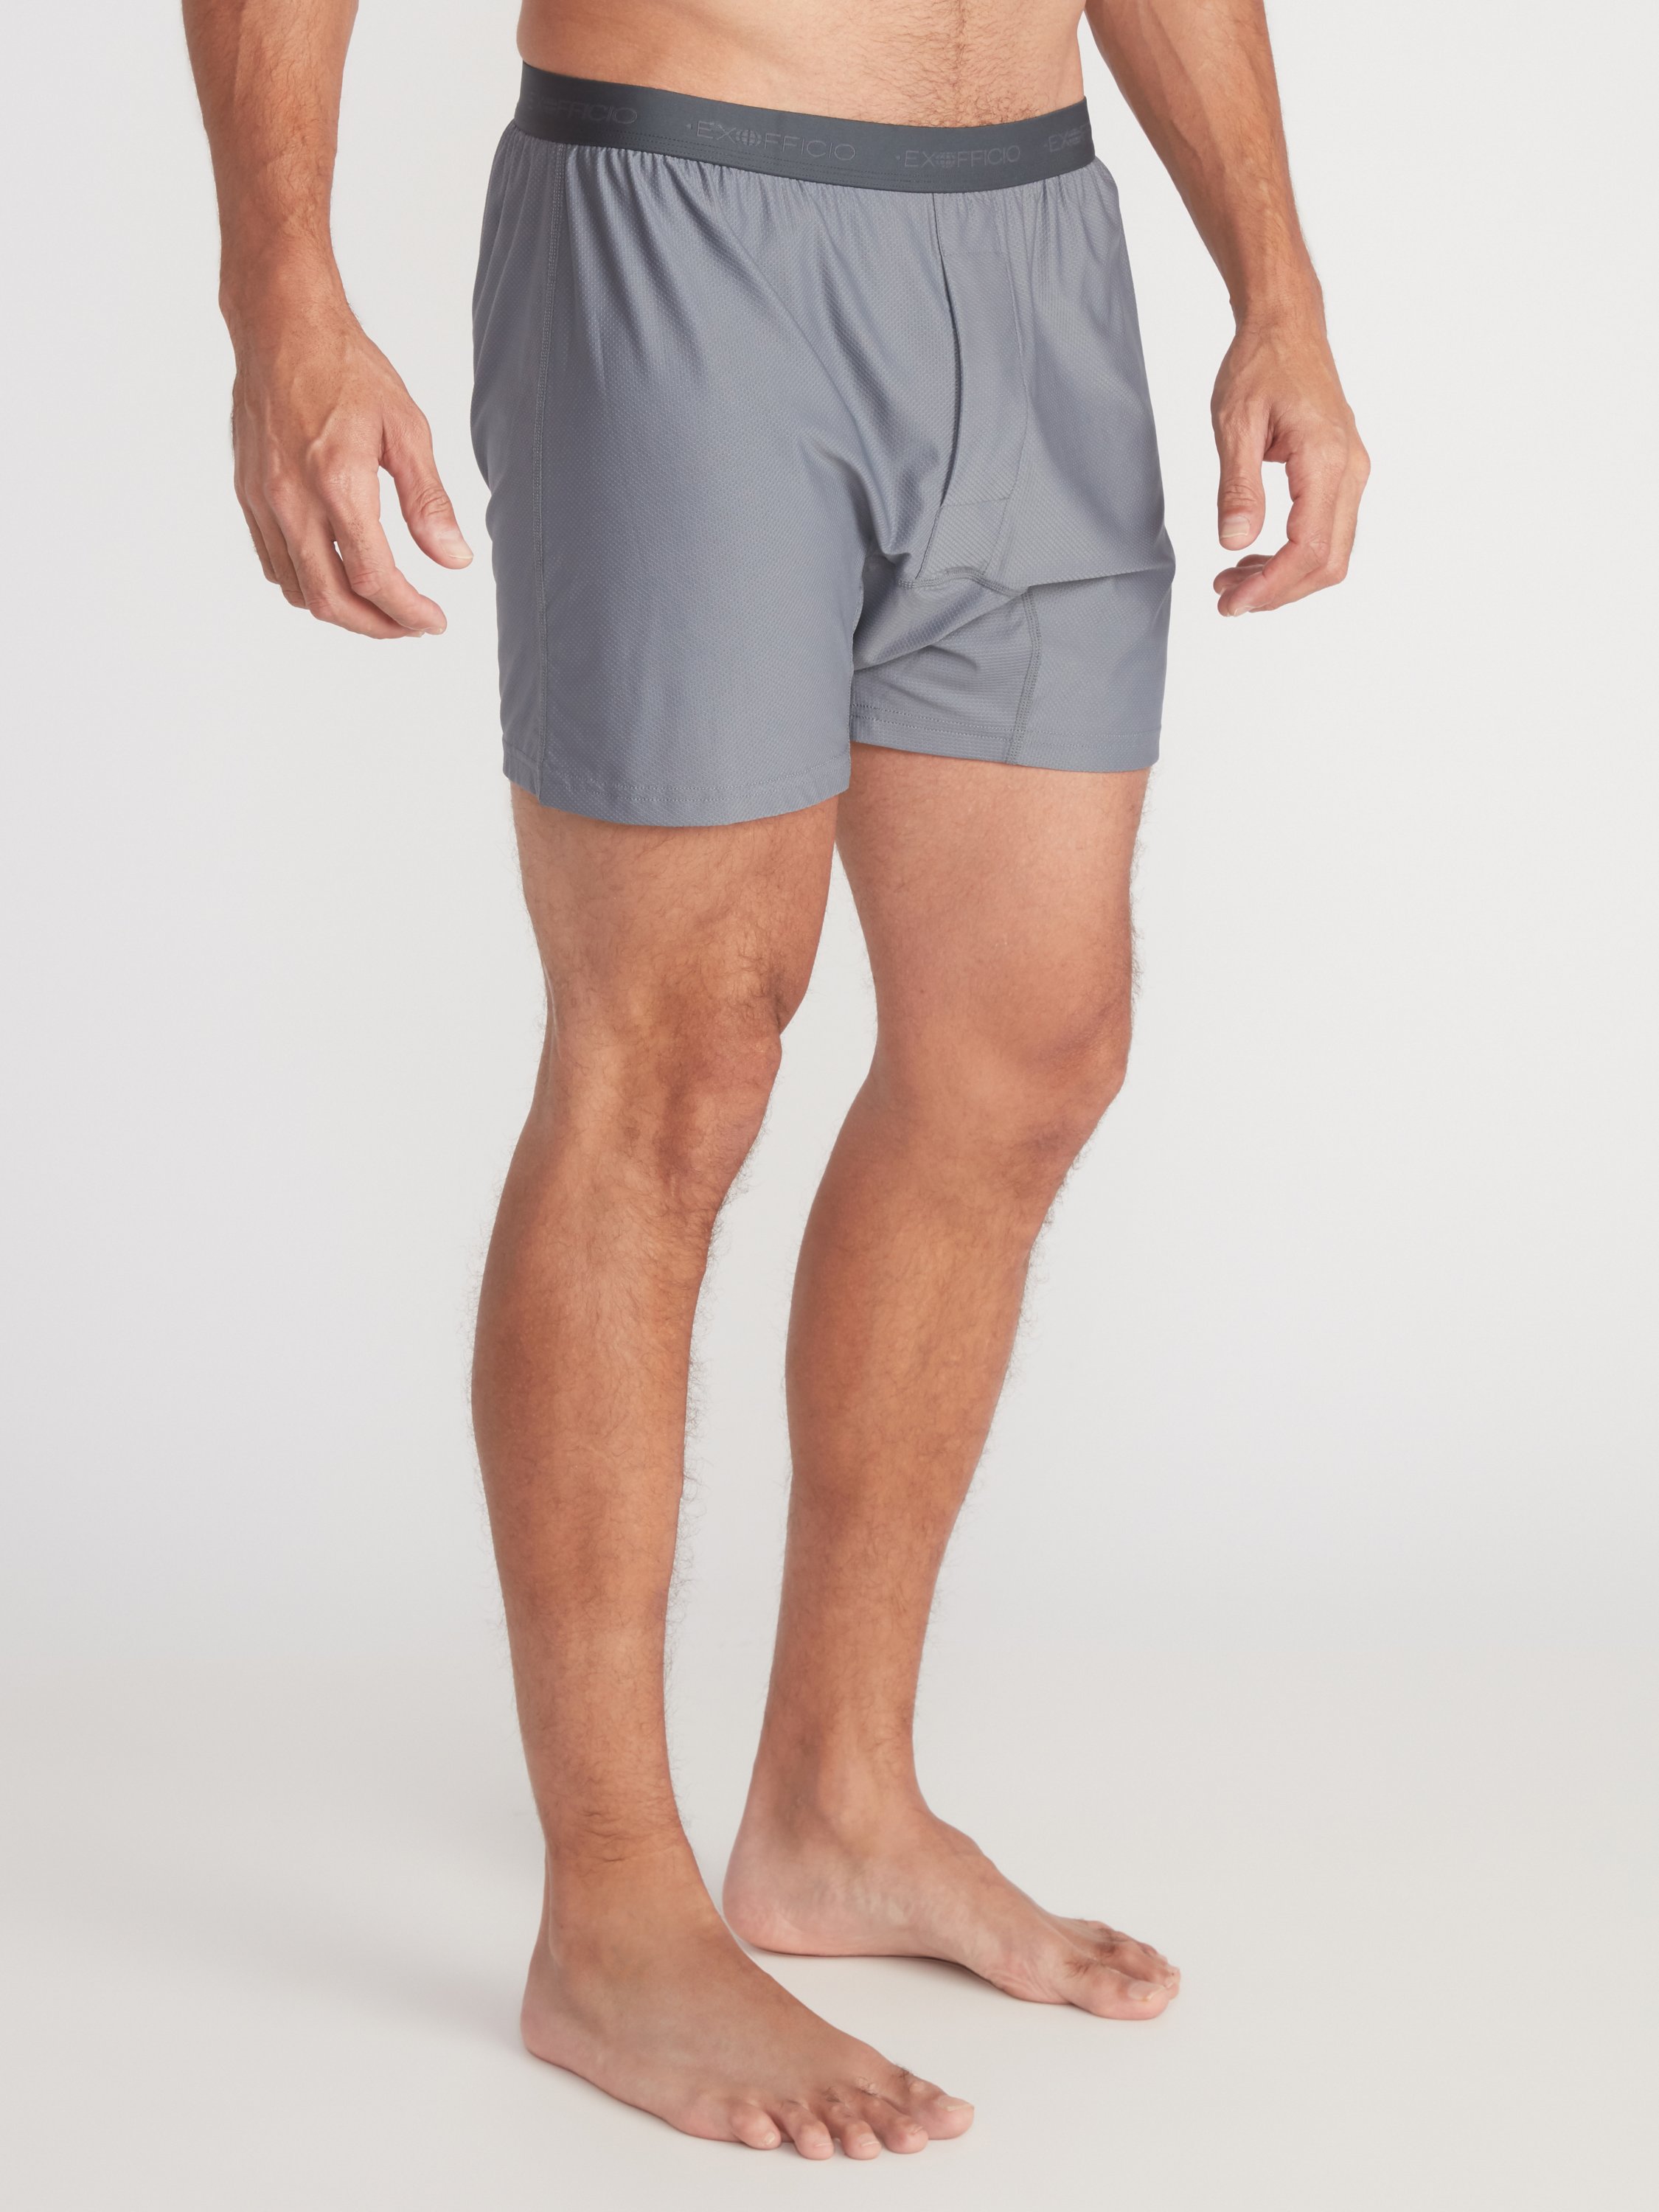 ExOfficio Men's Give-N-Go Boxer Underwear- 1241-2171 – Lieber's